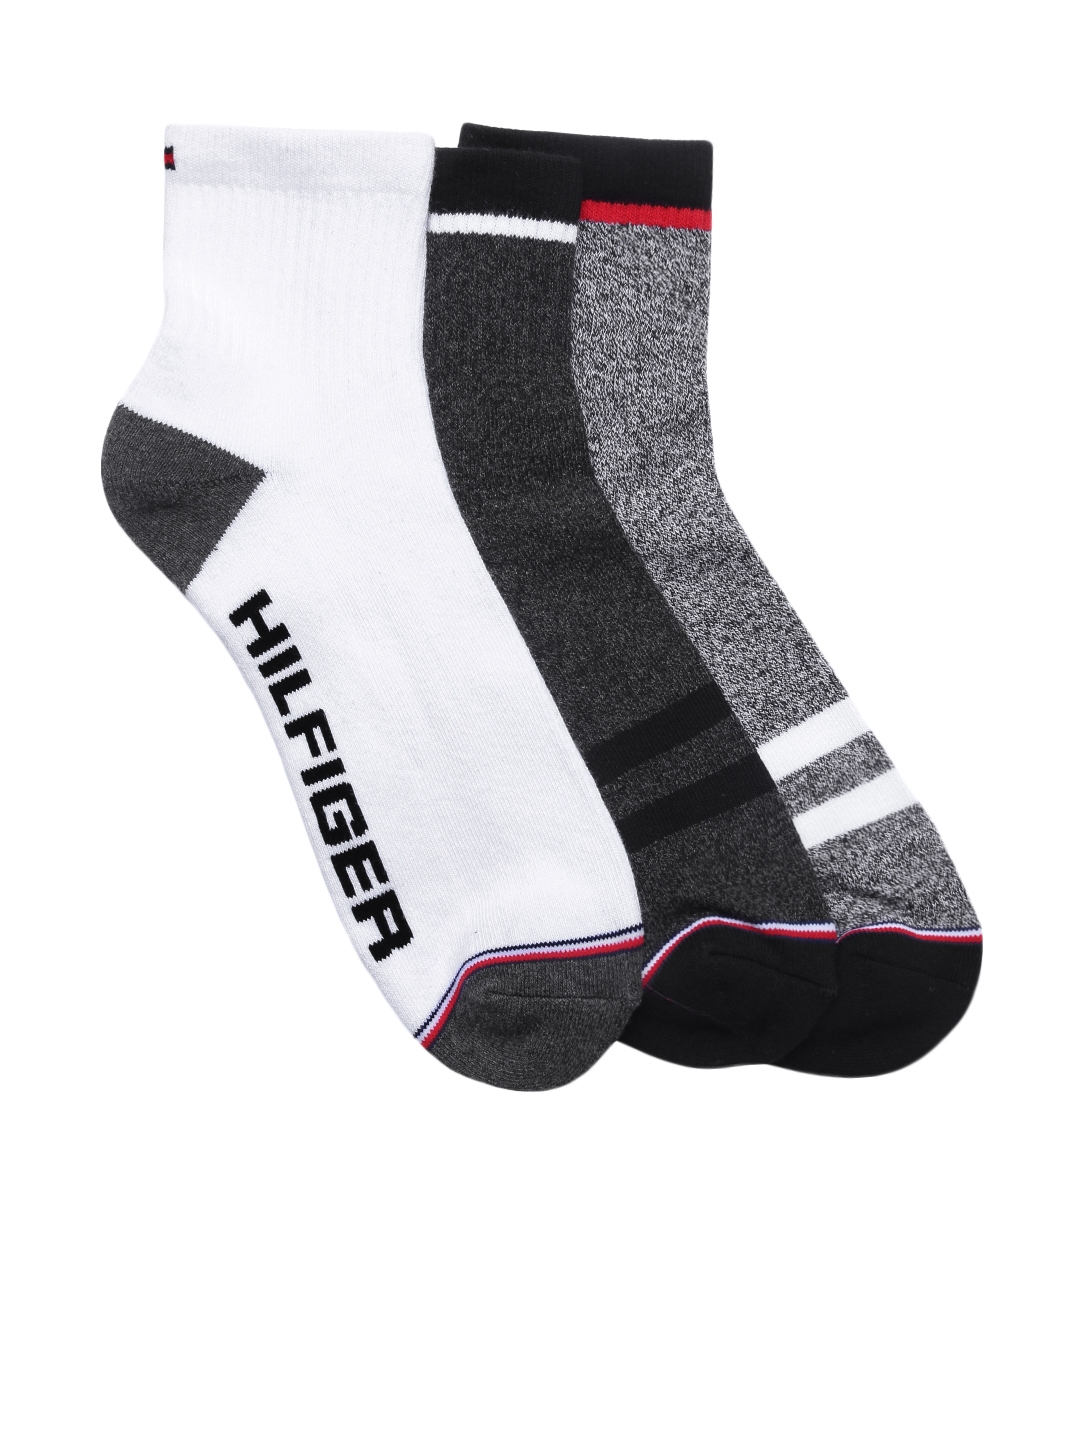 tommy hilfiger men's ankle socks